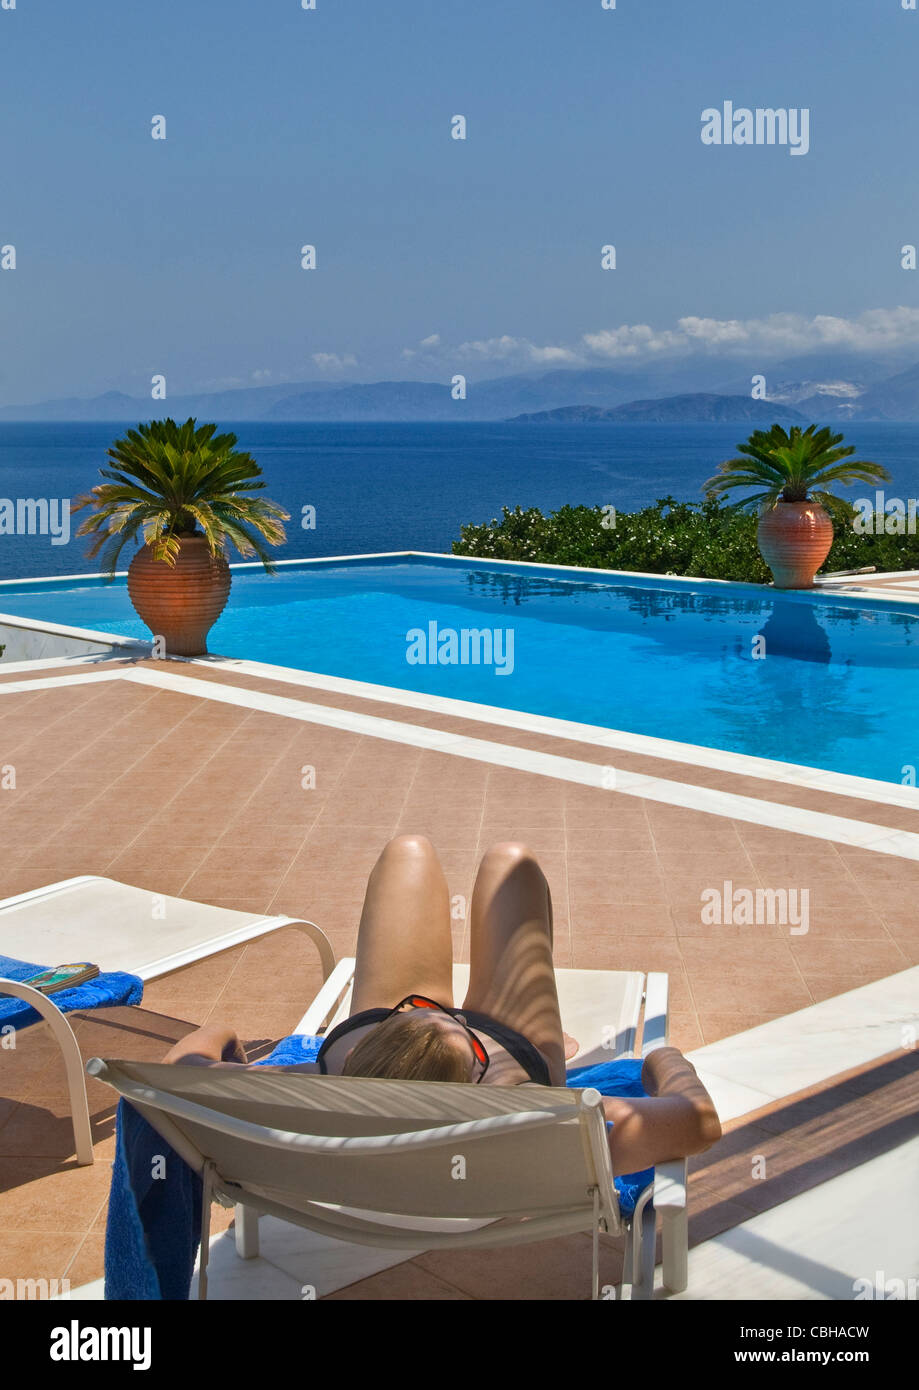 Urlaub Frau Infinity Pool Entspannung im Urlaub Sonnenliege mit Luxuriöser Infinity-Pool und Blick auf das Meer Stockfoto